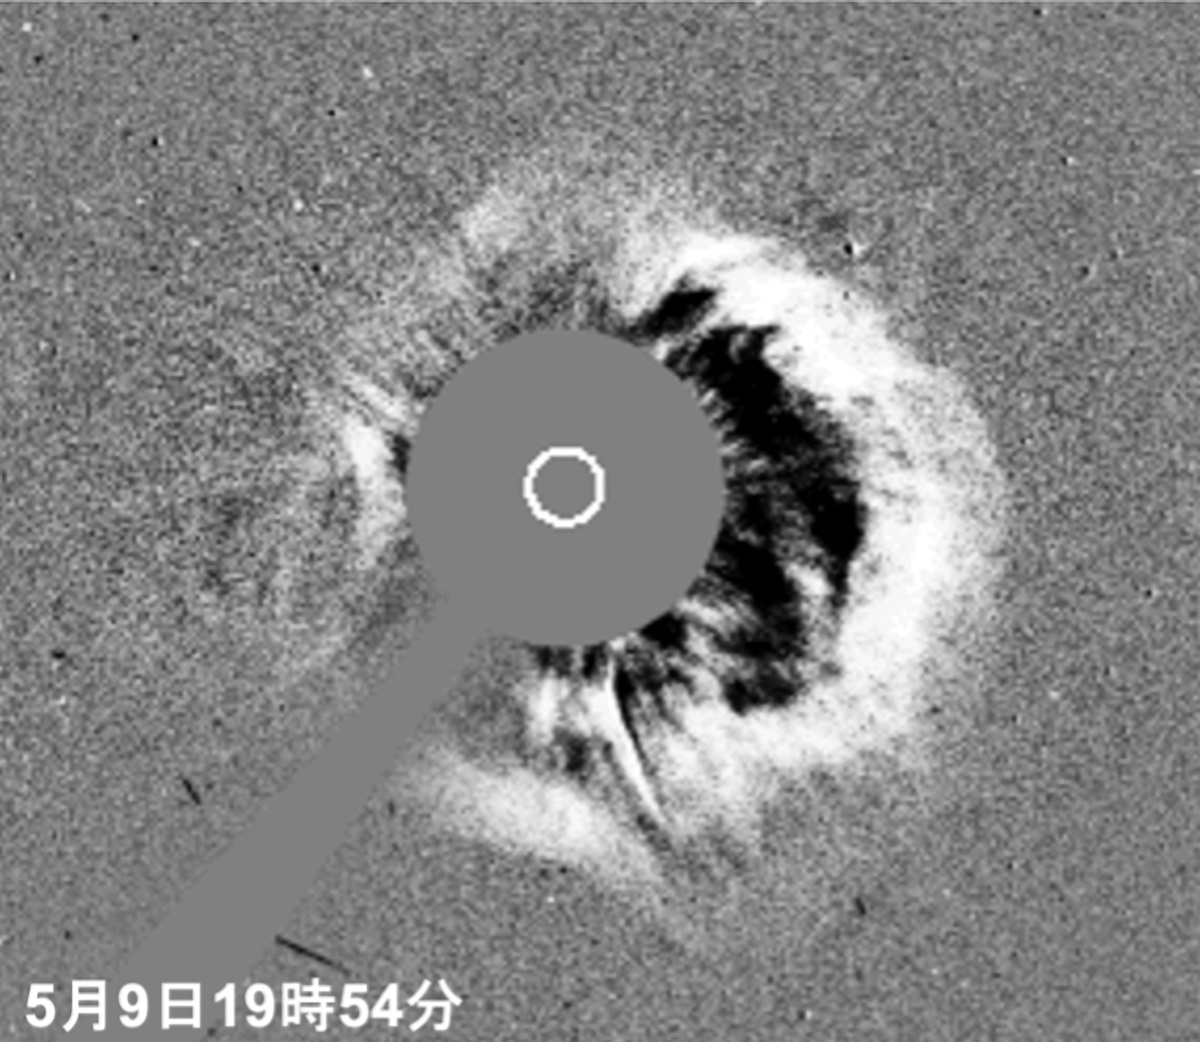 探査機「SOHO」で観測されたCMEの様子。中心部の白丸が太陽を示している（出典：NICT）